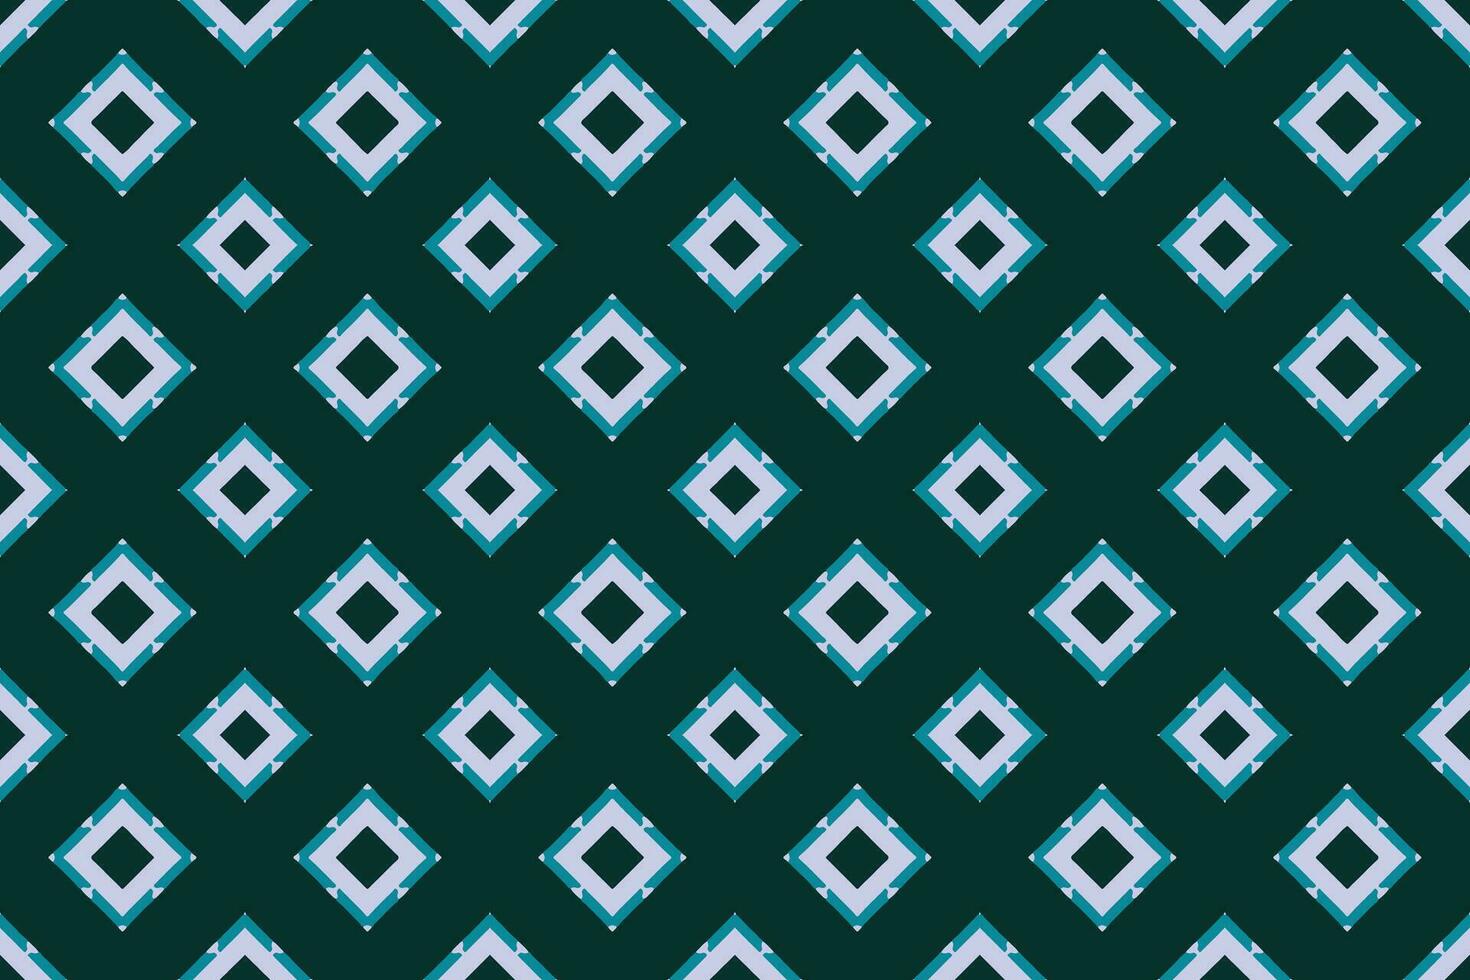 naadloos batik patroon, geometrische tribal patroon, het lijkt op etnisch boho, azteken stijl, ikat stijl.luxe decoratief kleding stof patroon voor beroemd banners.ontworpen voor gebruik stof,gordijn,tapijt,batik vector